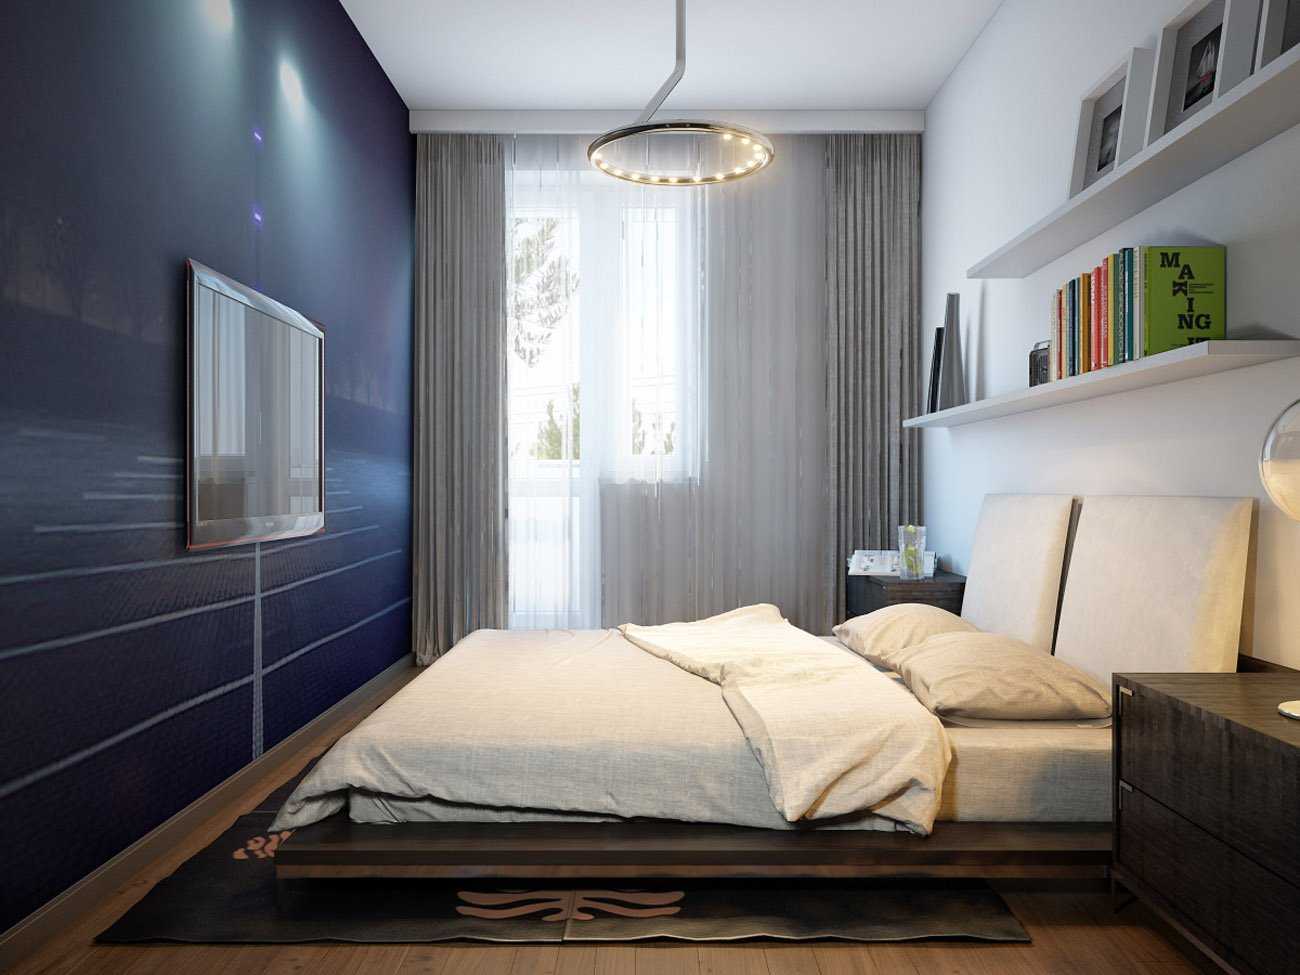 Длинная спальня: правильный подход к дизайну интерьера (фото) для достижения уюта